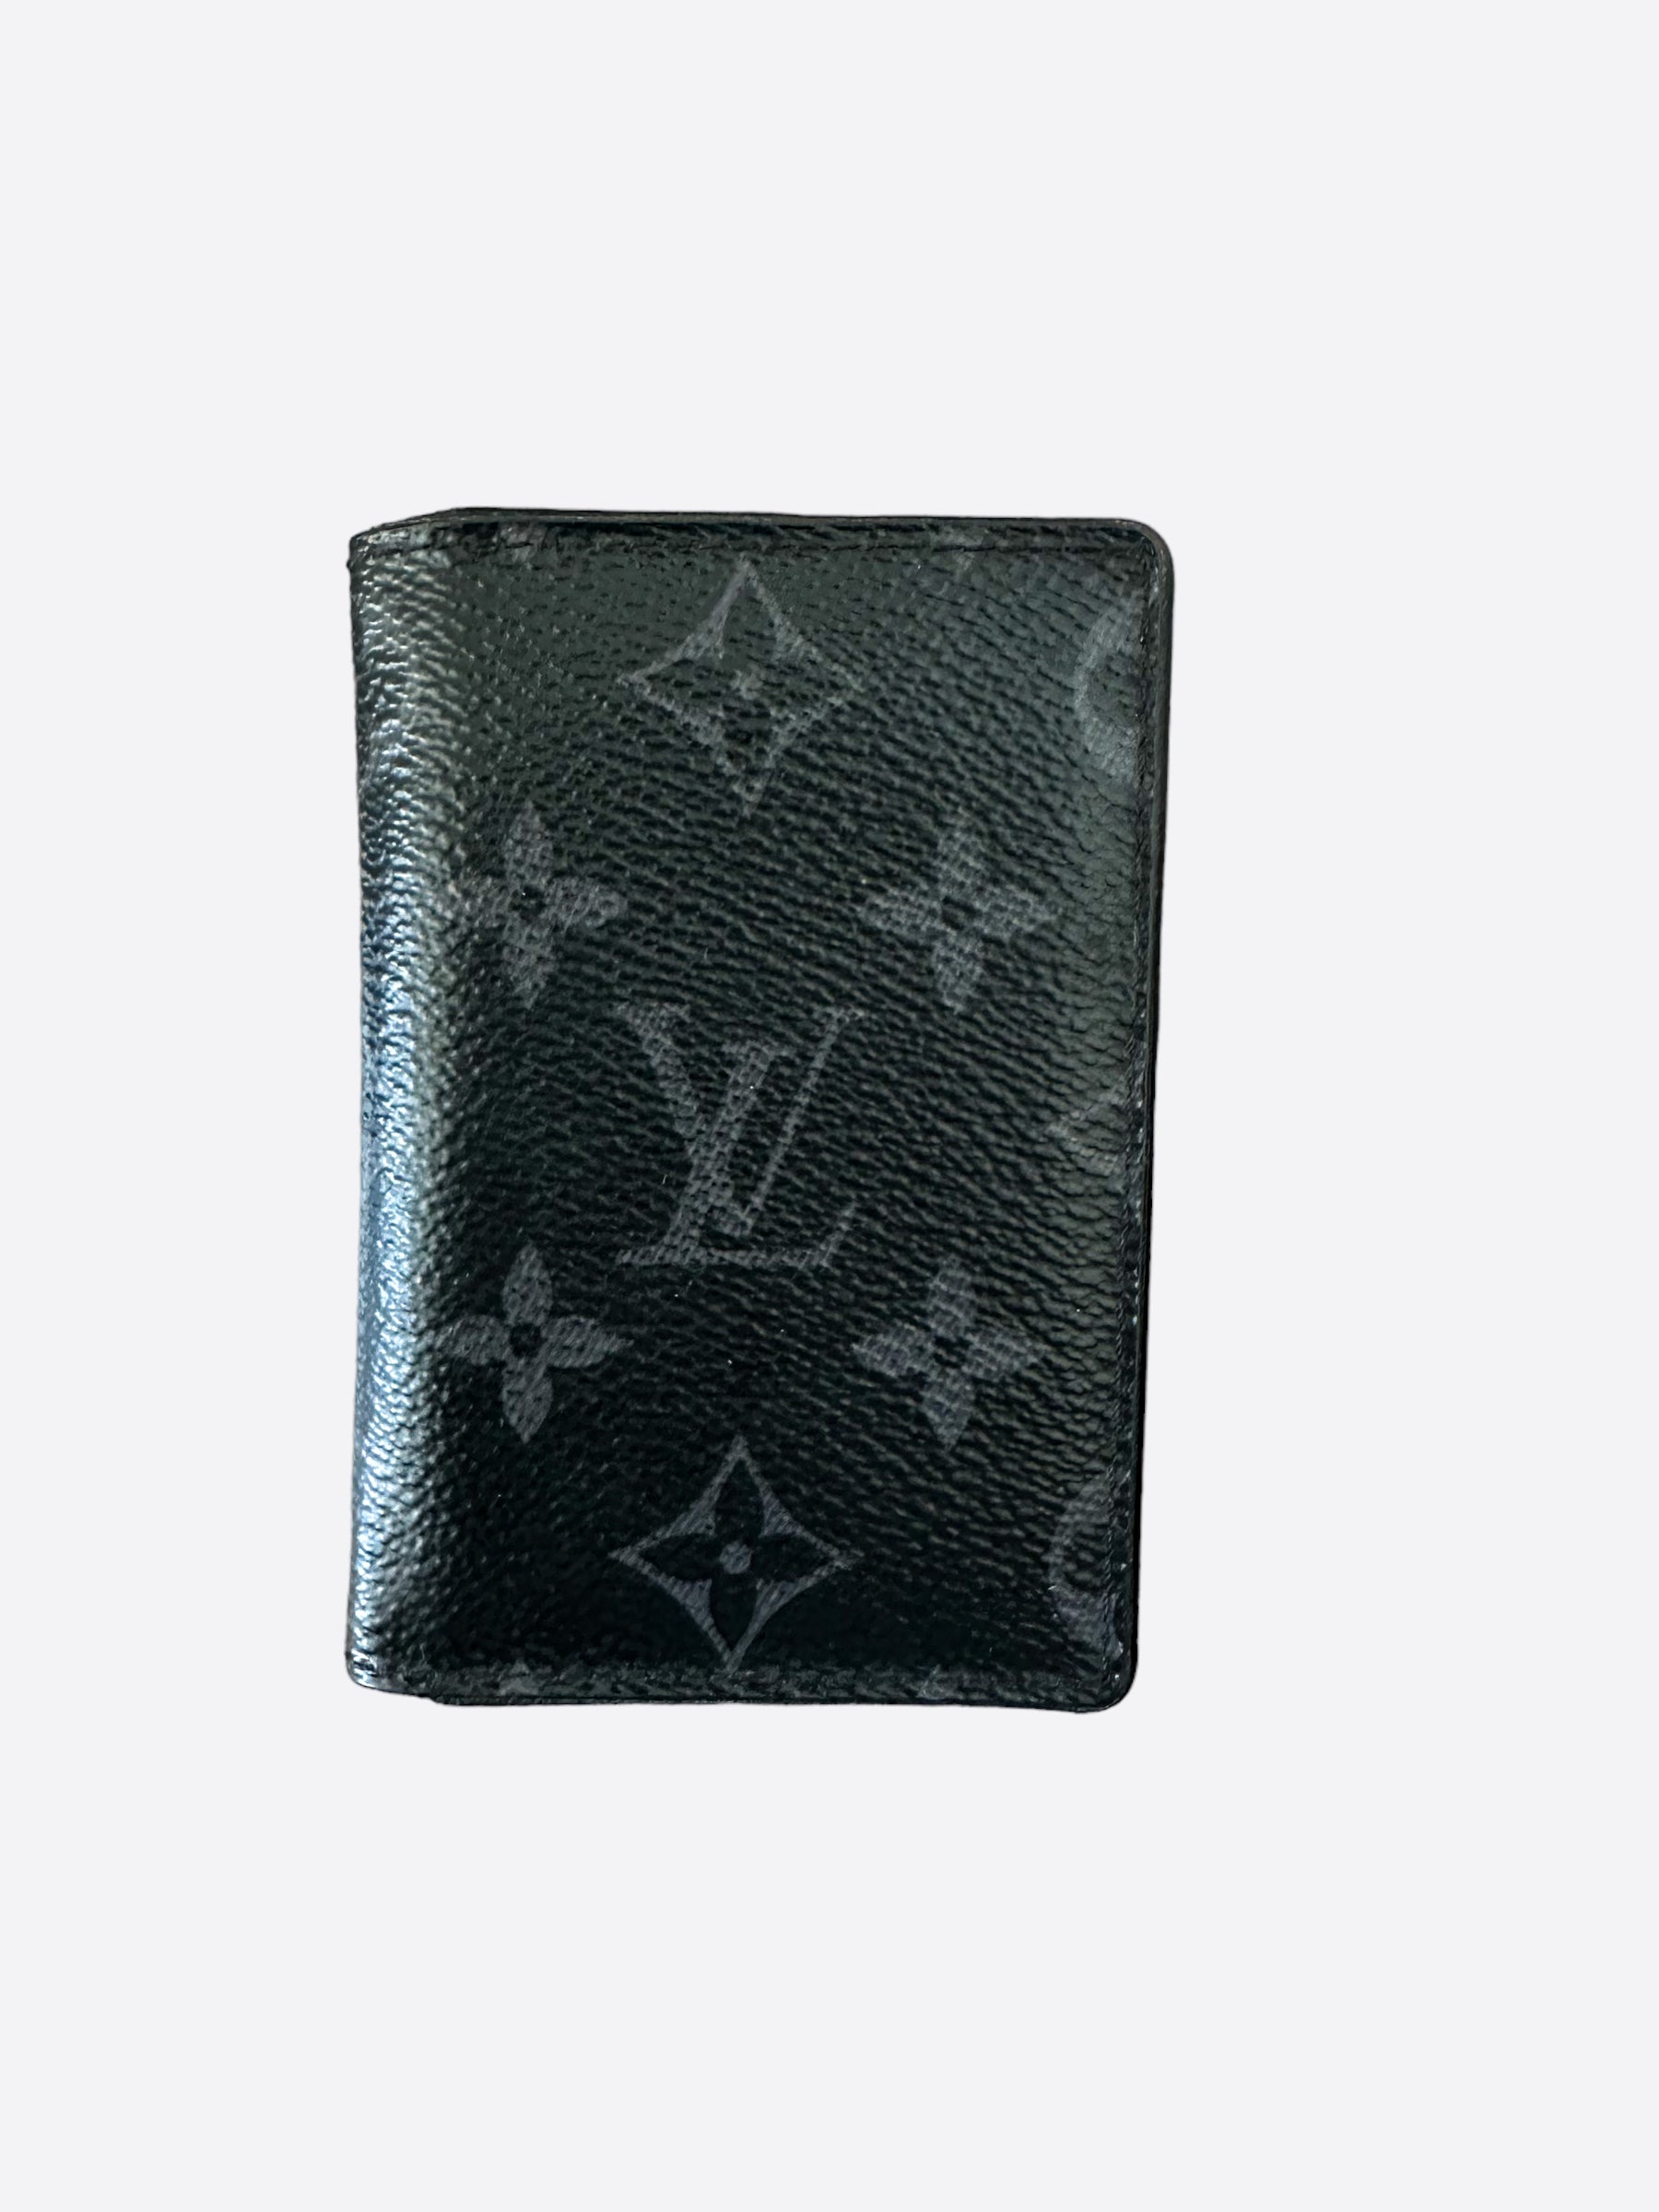 Louis Vuitton Monogram Eclipse Pocket Organizer – Savonches